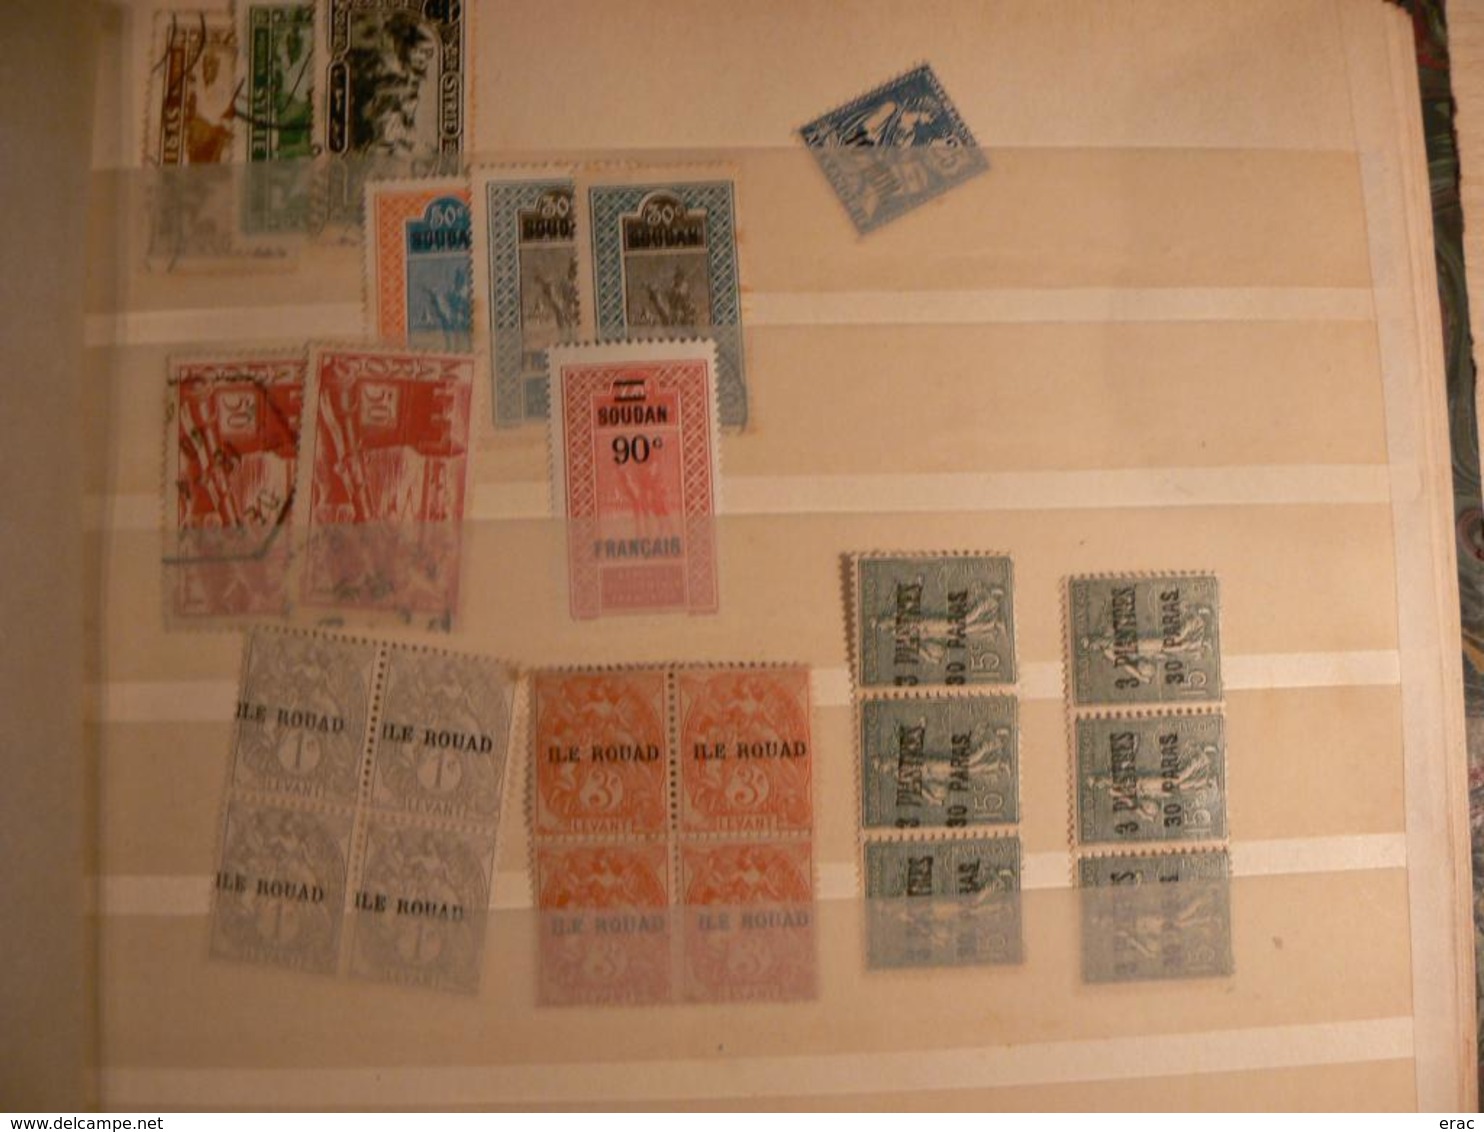 Monde - Lot varié de timbres anciens